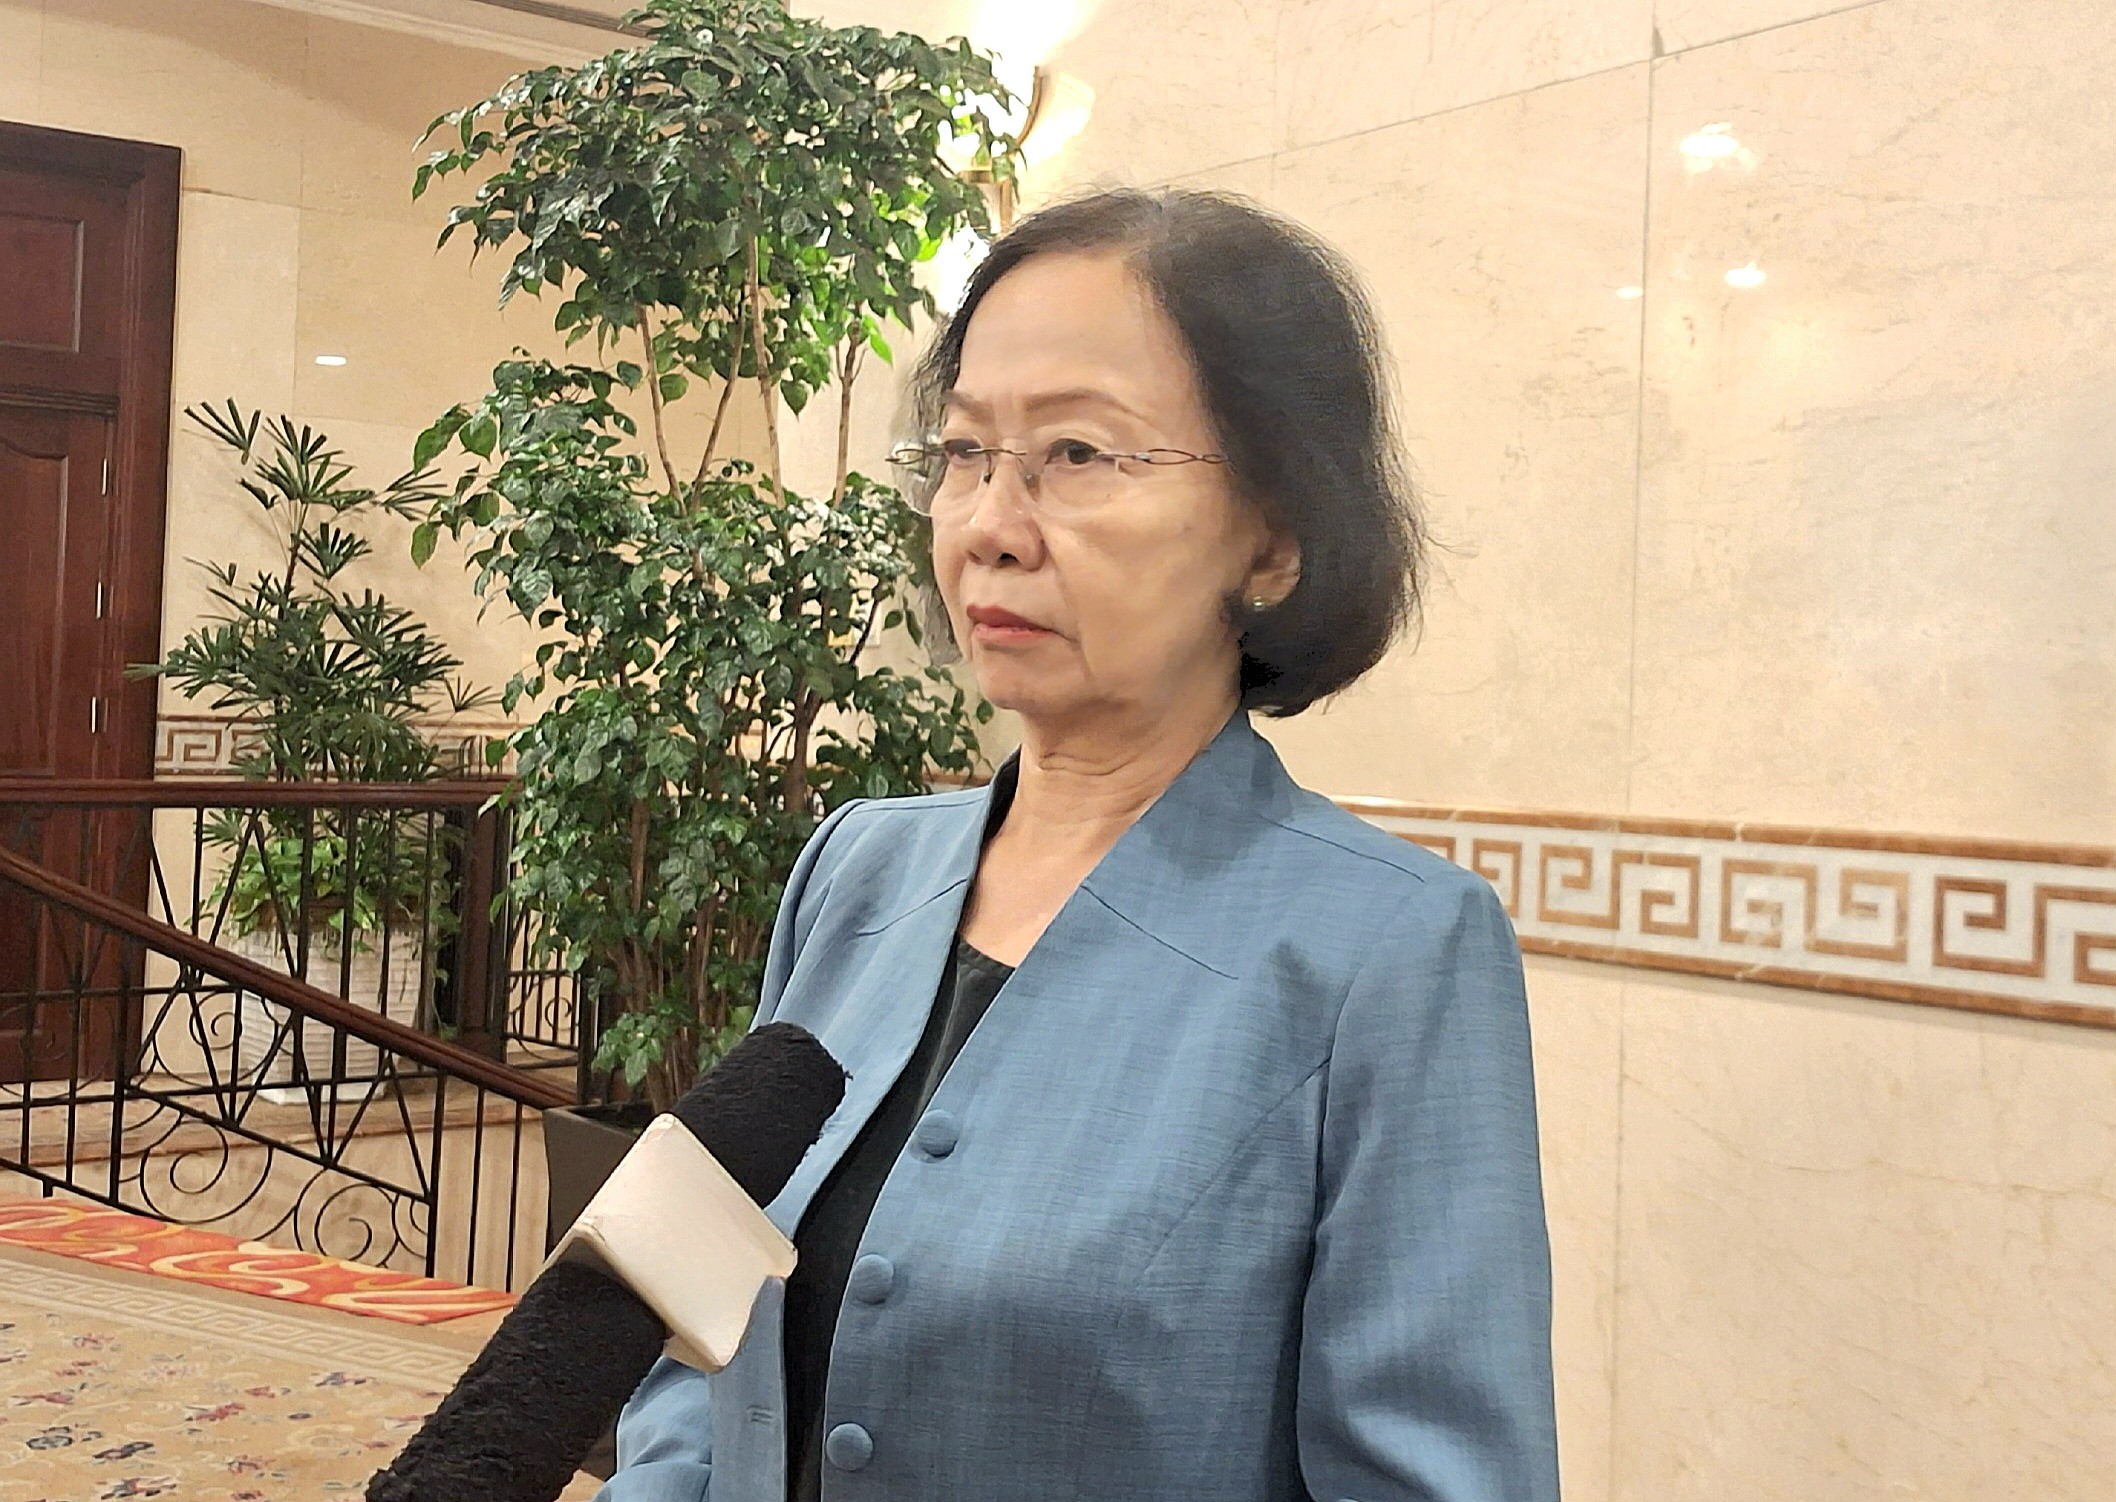 Phó Chủ tịch HHDLVN Nguyễn Thị Khánh: “Hàng không tăng giá, du khách nên lên lịch trình xa và đặt vé sớm”